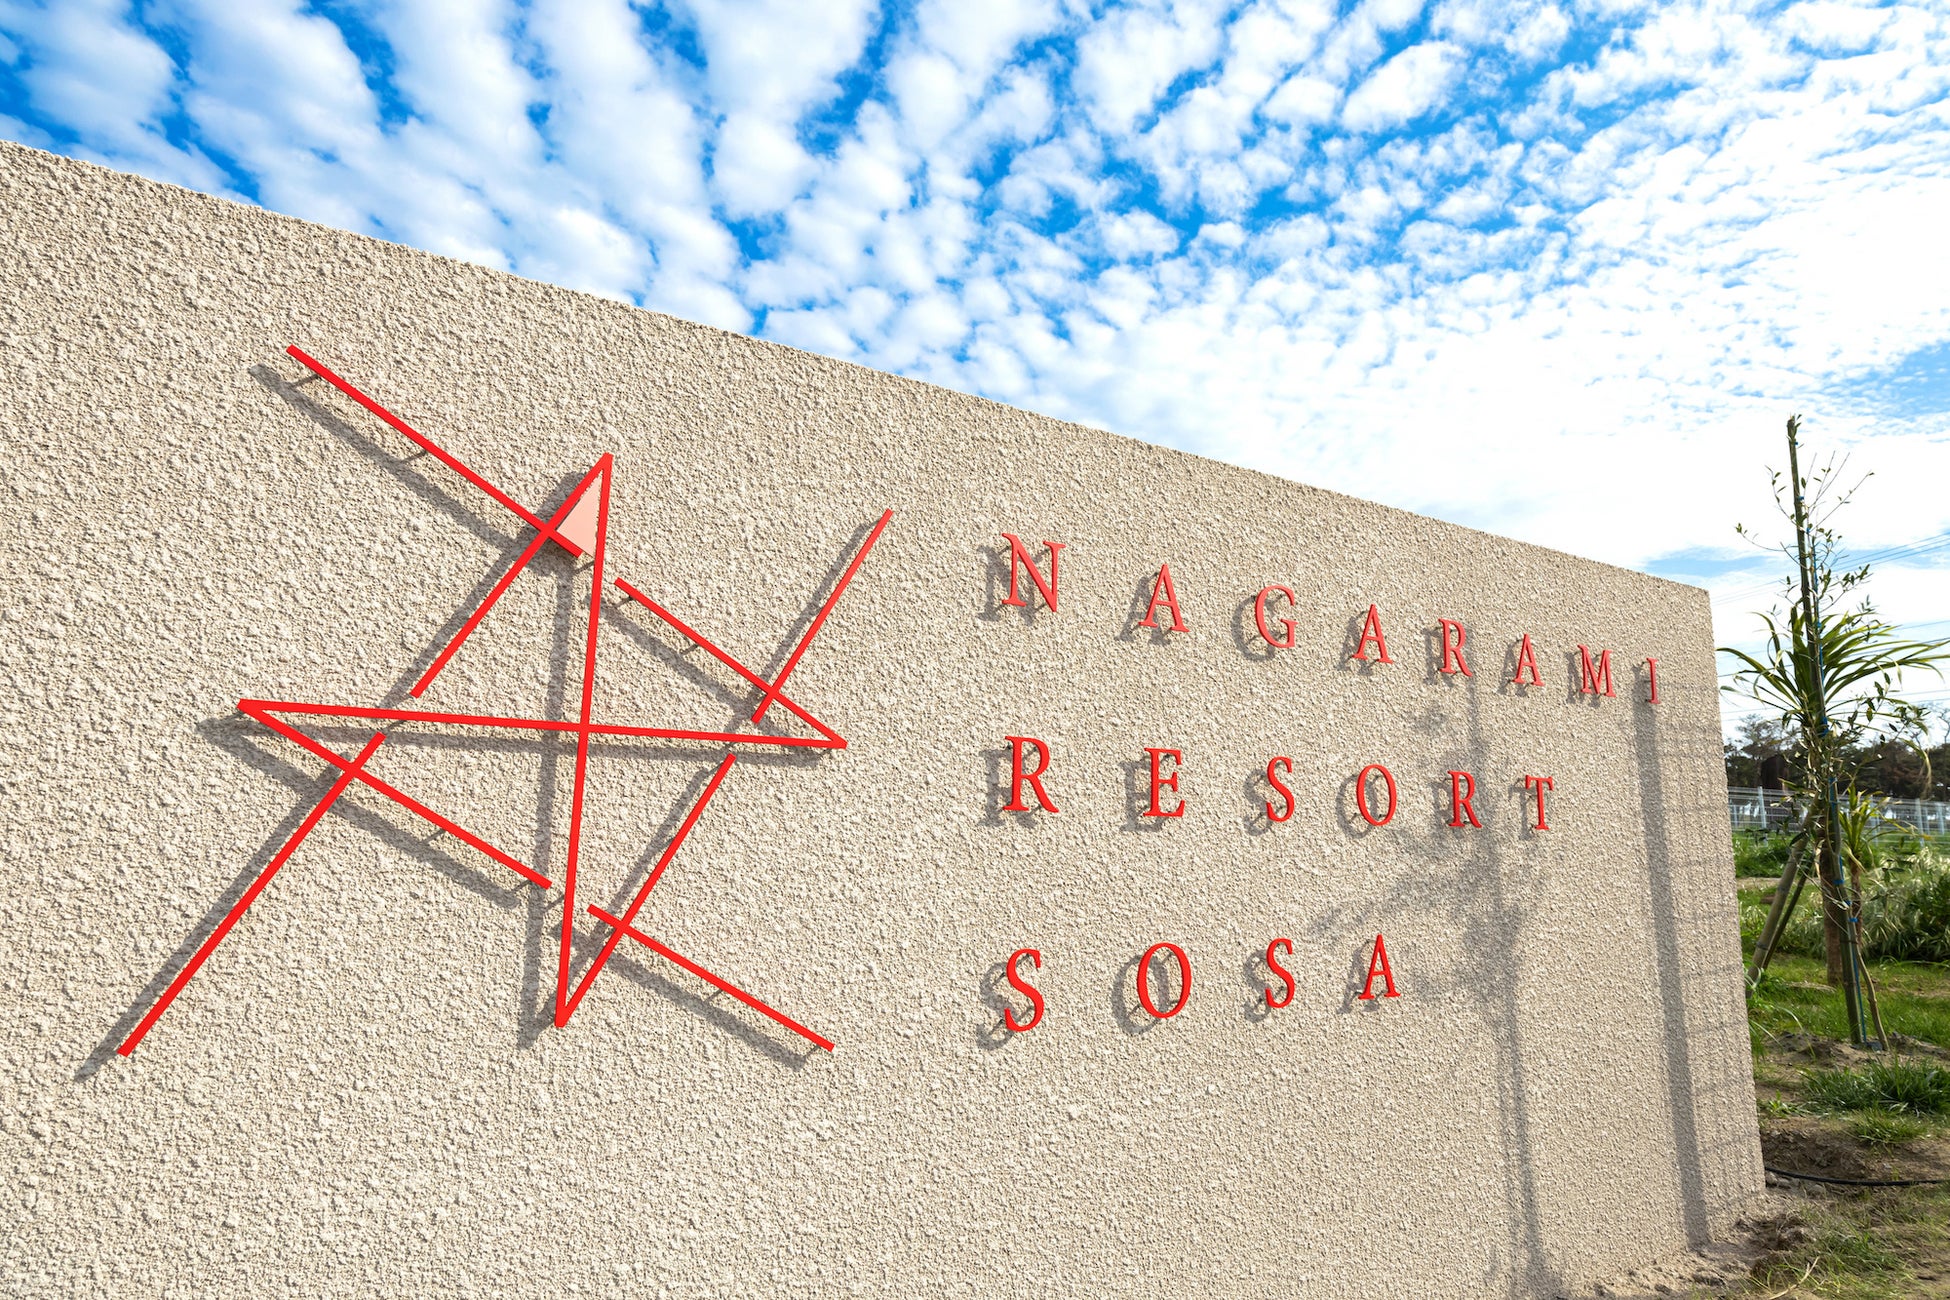 九十九里浜発、愛犬と過ごせるプライベートスパリゾート「NAGARAMI RESORT SOSA」グランドオープンのお知らせ